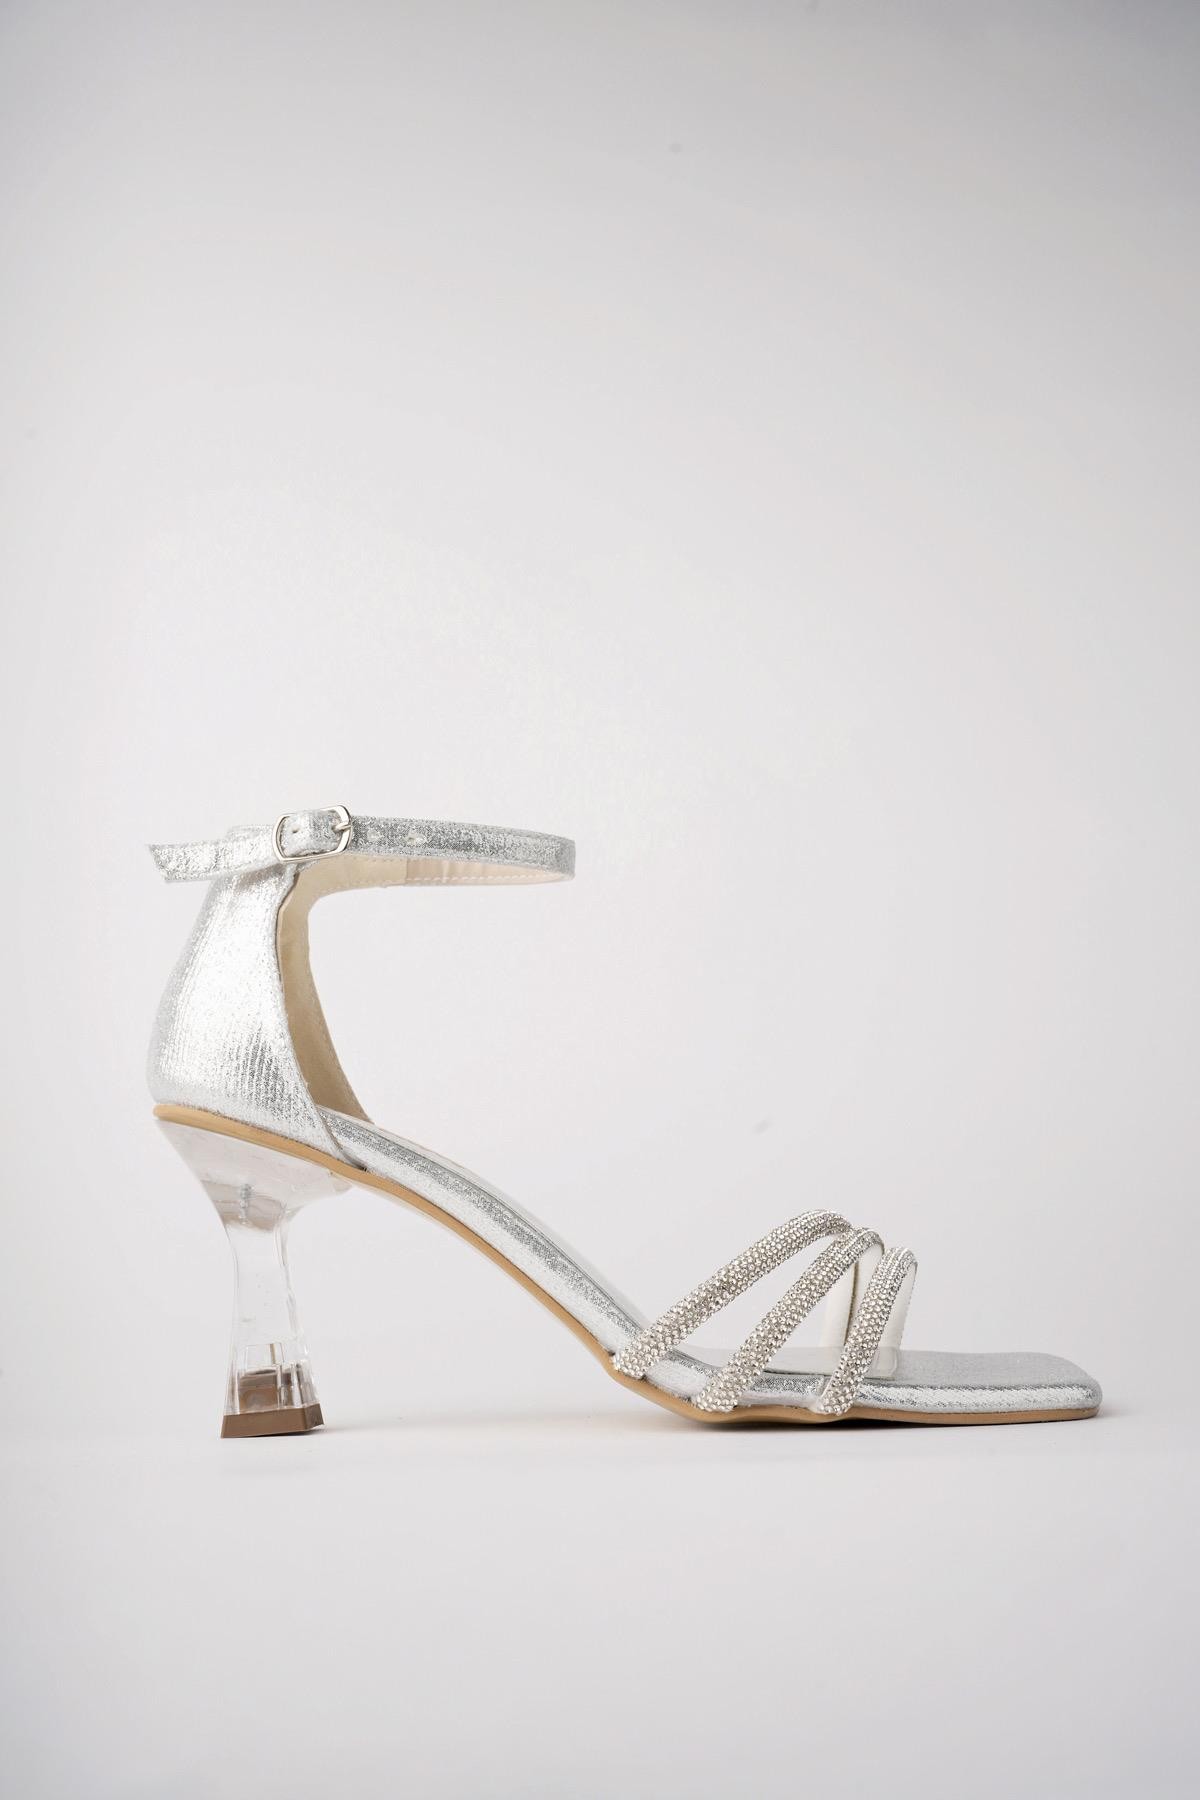 Muggo ASHLEY Garantili Kadın Üç Bantlı Kemerli Taşlı Şeffaf Topuklu Ayakkabı